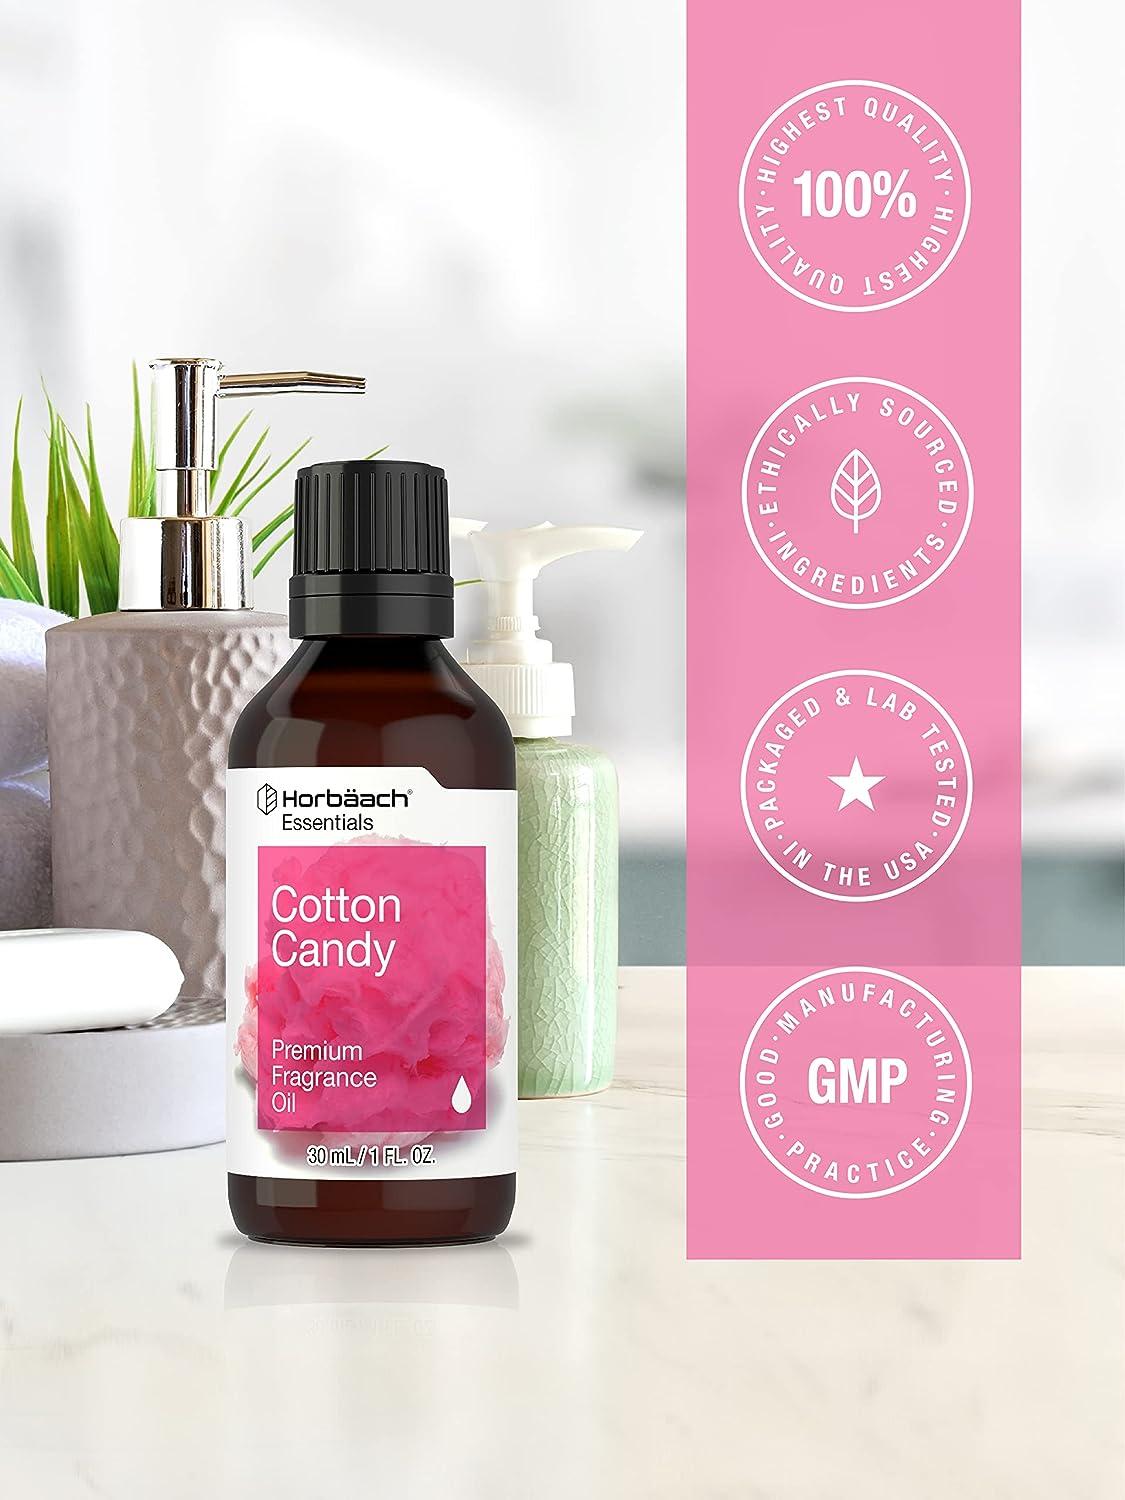 Cotton Candy Fragrance Oil - Premium Grade Scented Oil - 30ml